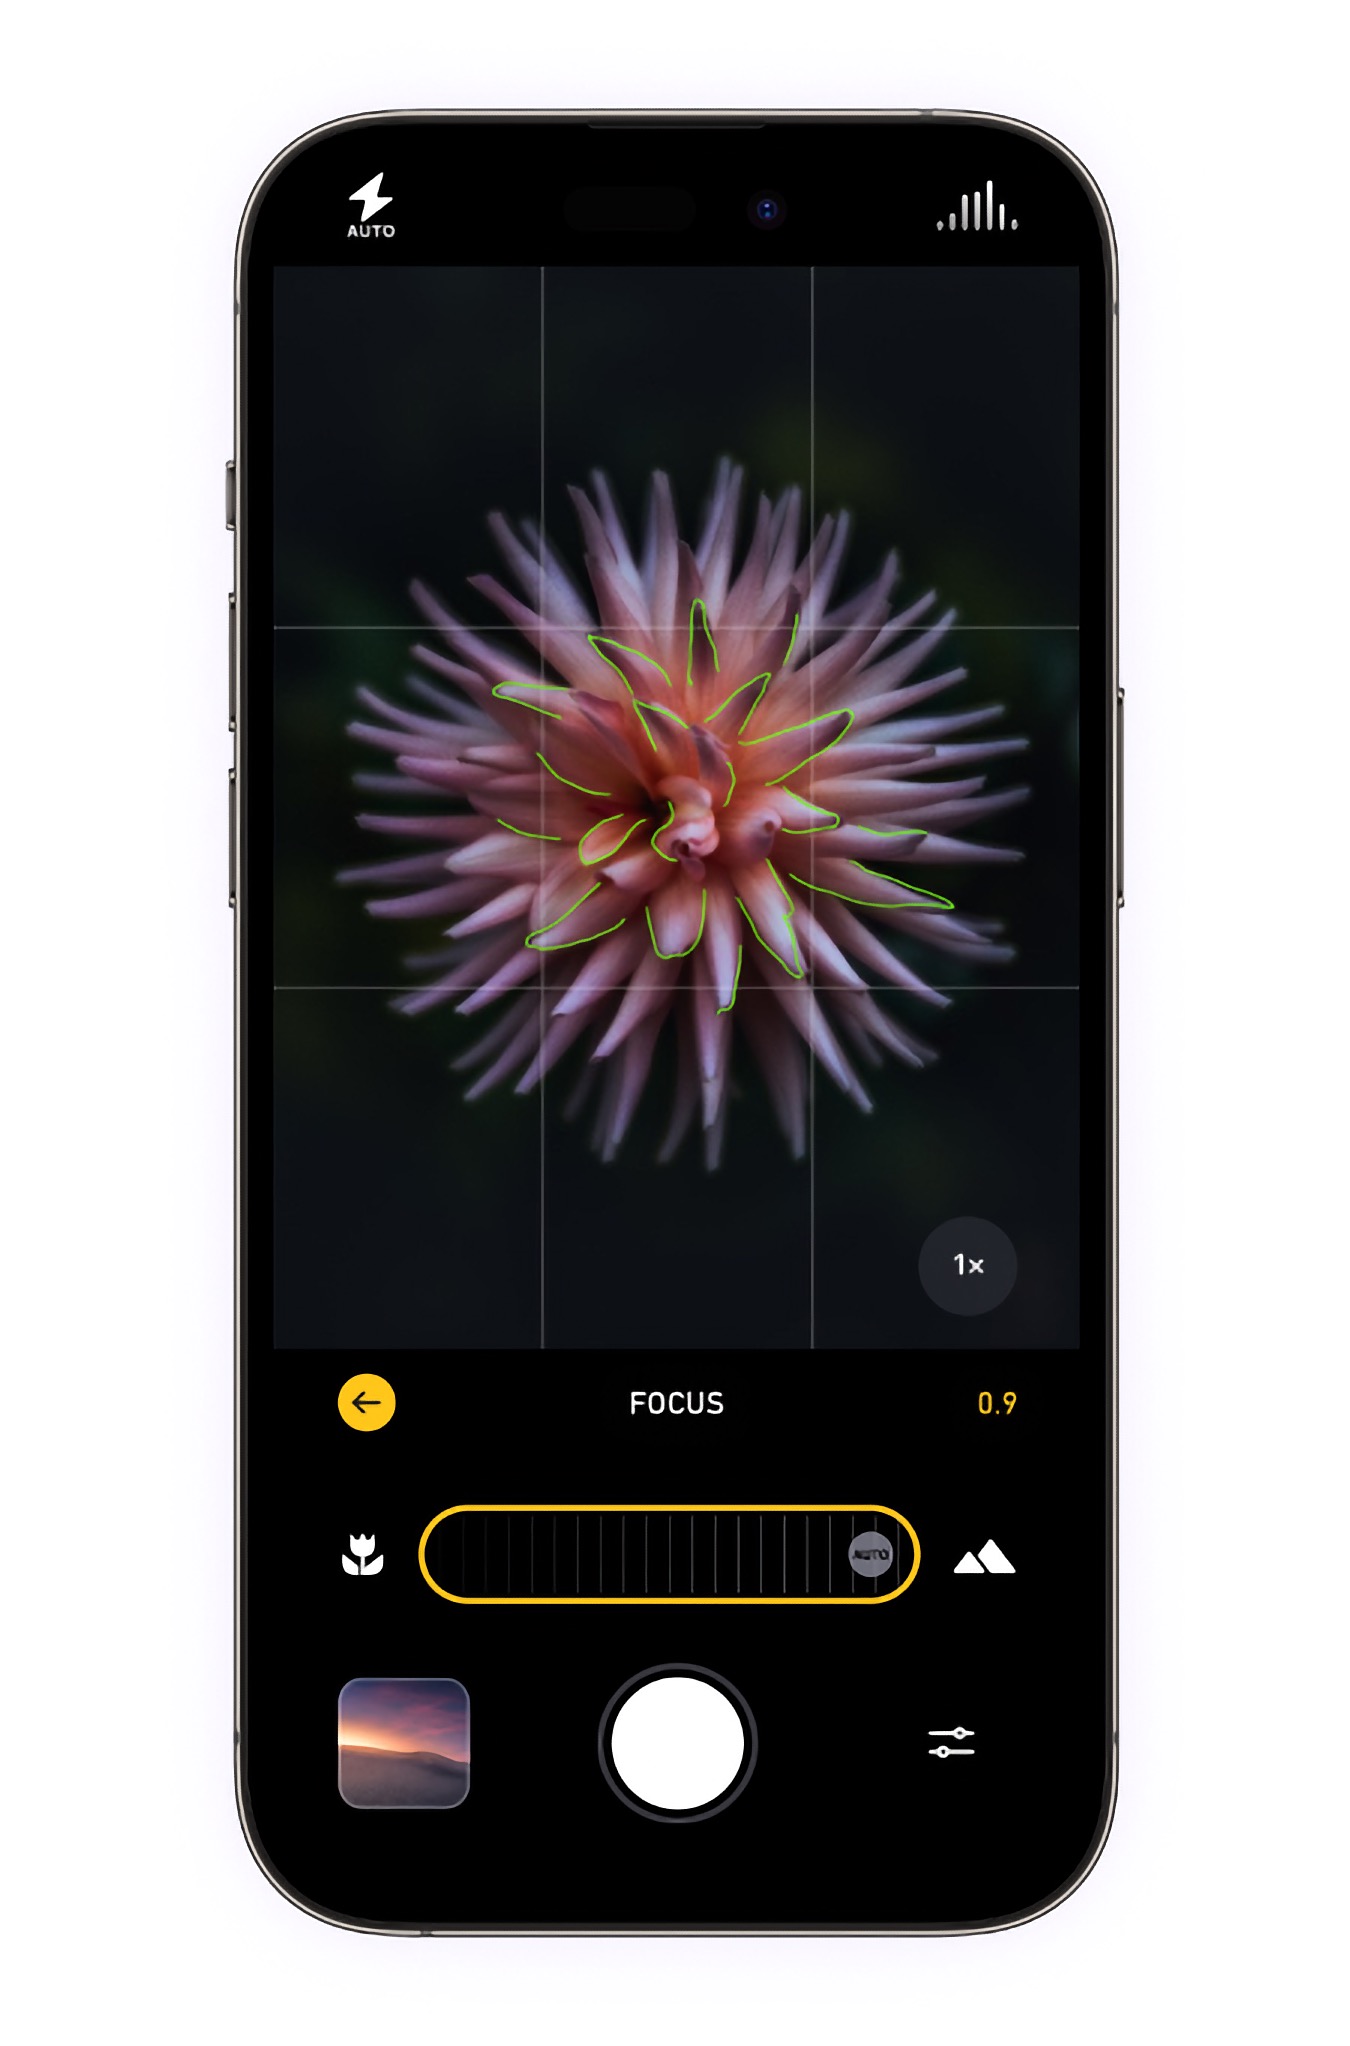 Photon sur iOS permet l'enregistrement des photos sur stockage